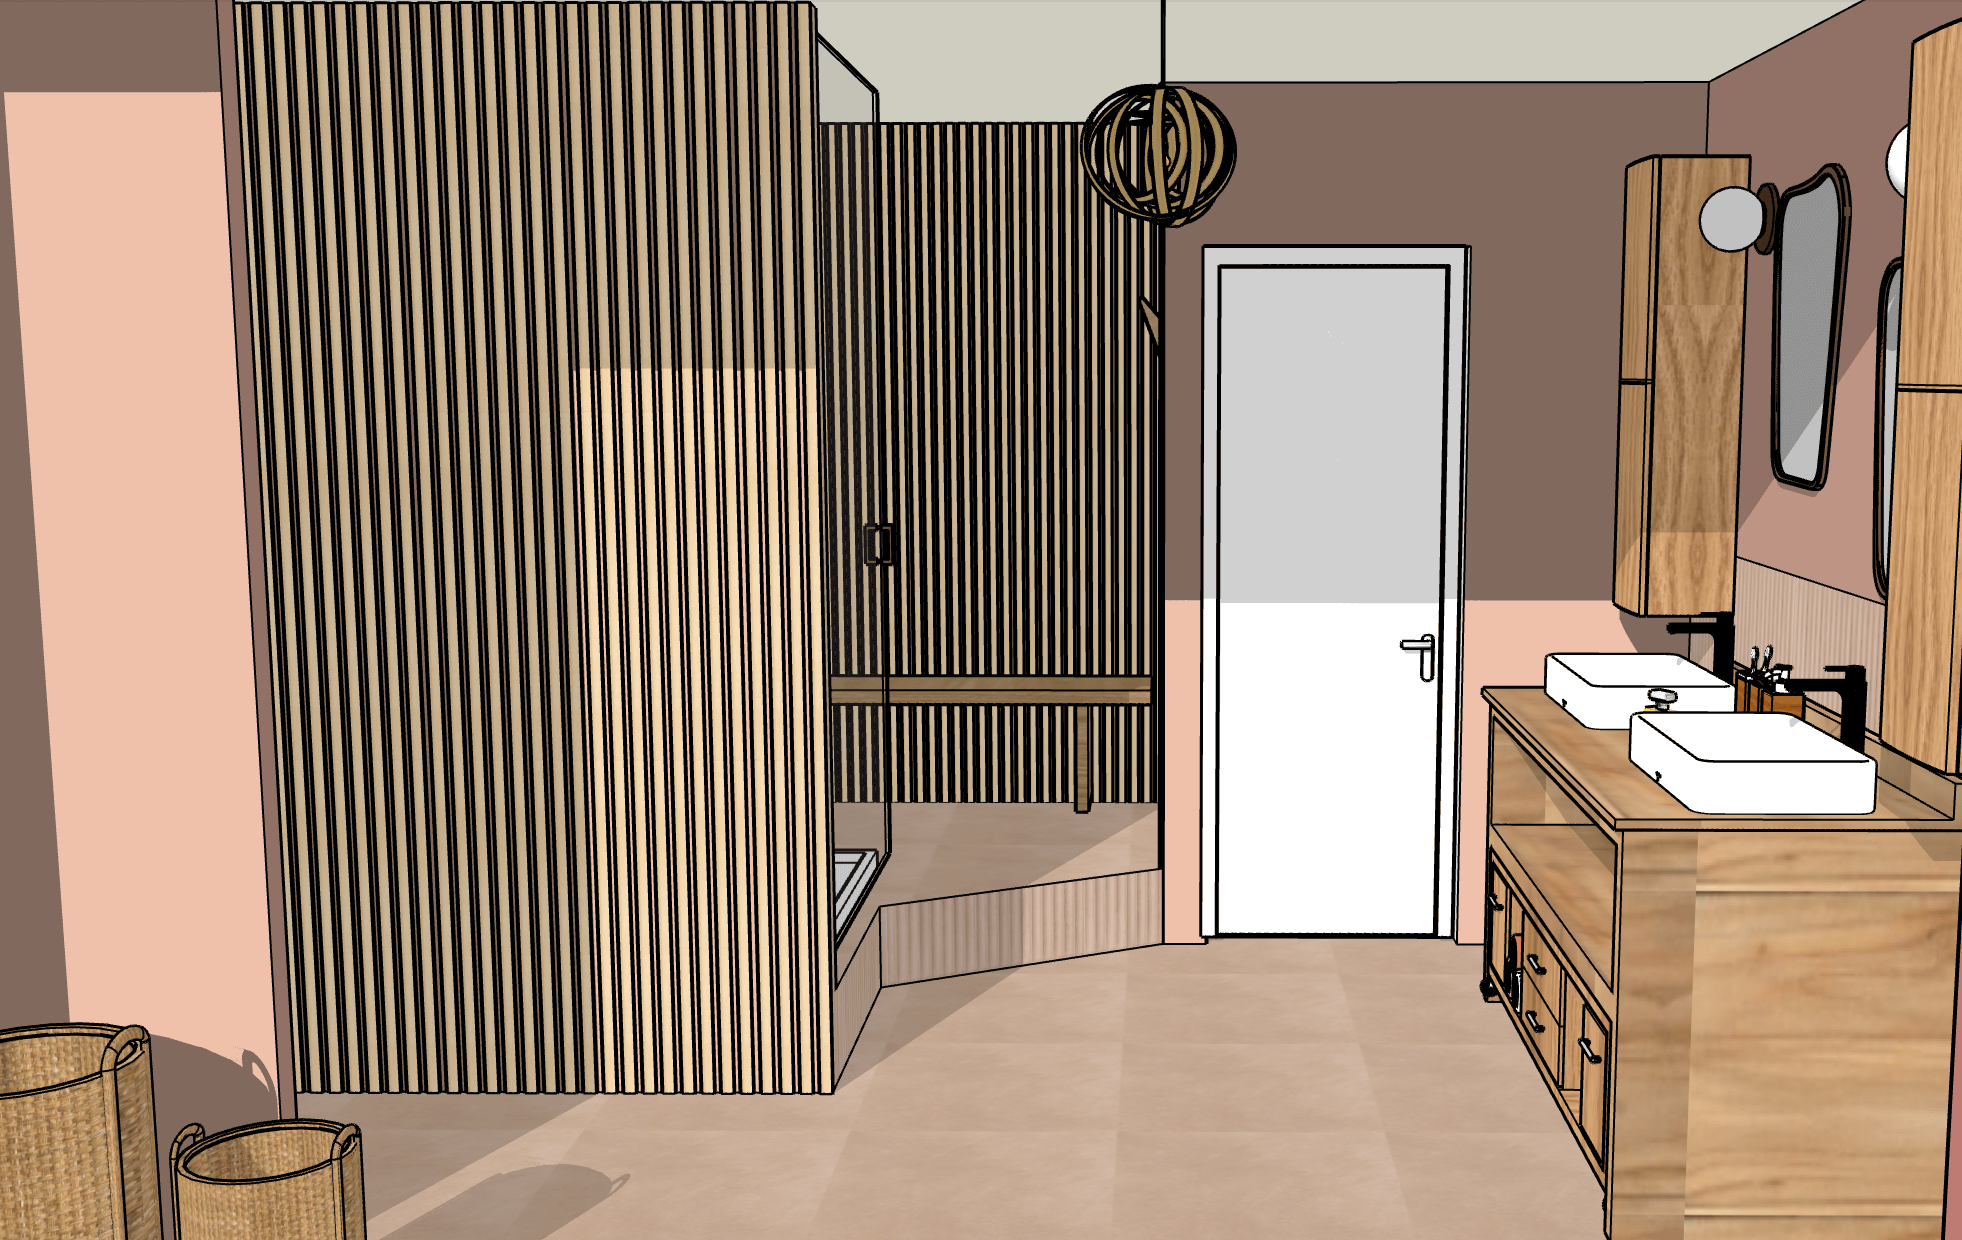 Plan pour salle de bains dans chambre parentale à Artigues, réalisé par Georgette MagritteS.